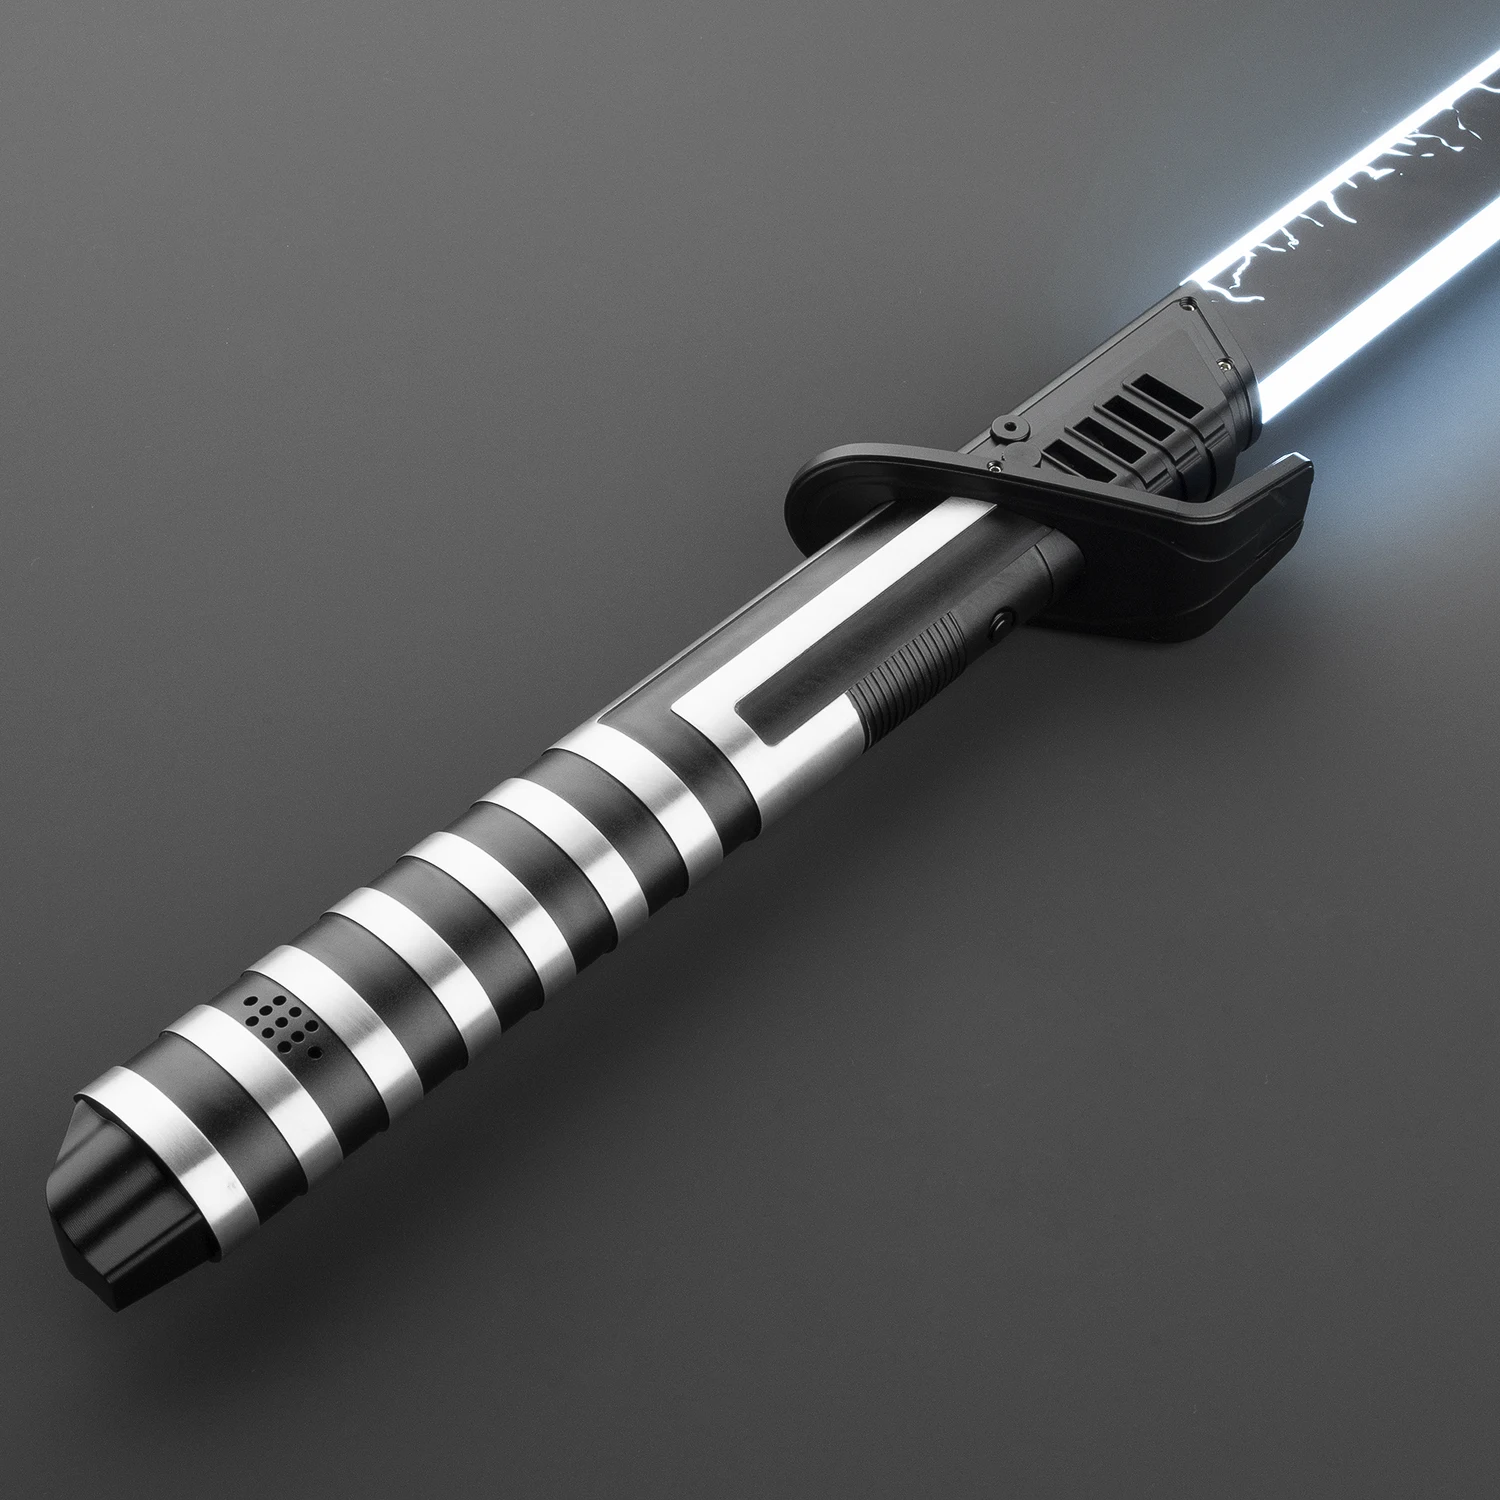 

PunkSaber Lightsaber Neopixel Jedi Laser Sword Heavy Dueling Sensitive Smooth Infinite Changing Hitting Sound Light Saber Toys